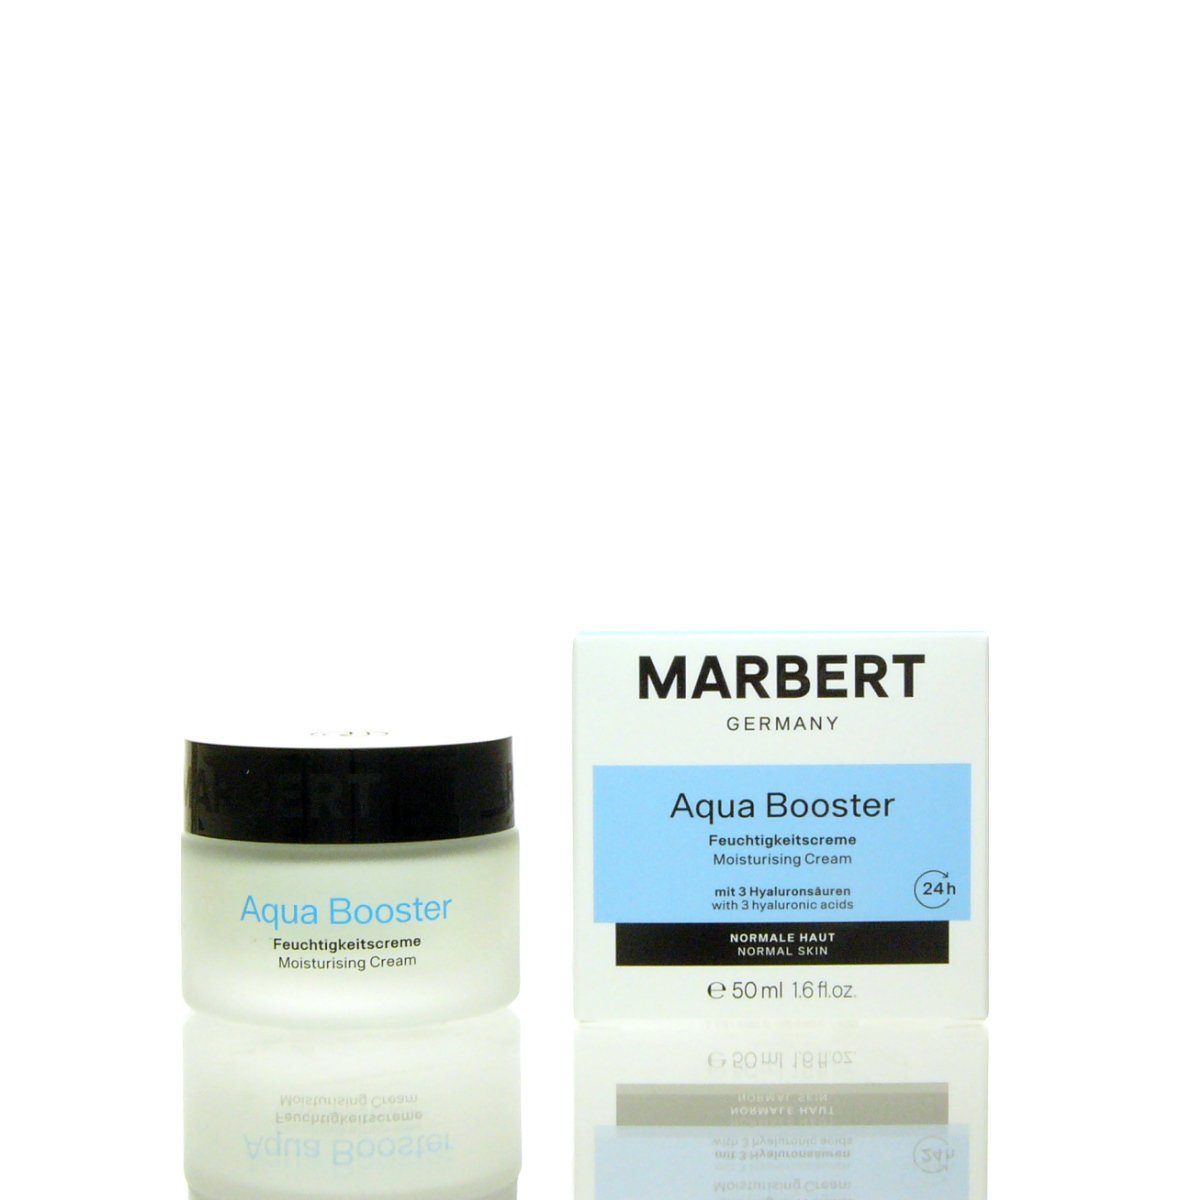 Marbert Gesichtspflege Marbert 24h Aqua Booster Moisturizing Cream 50 ml, Erfrischende 24h Feuchtigkeitspflege